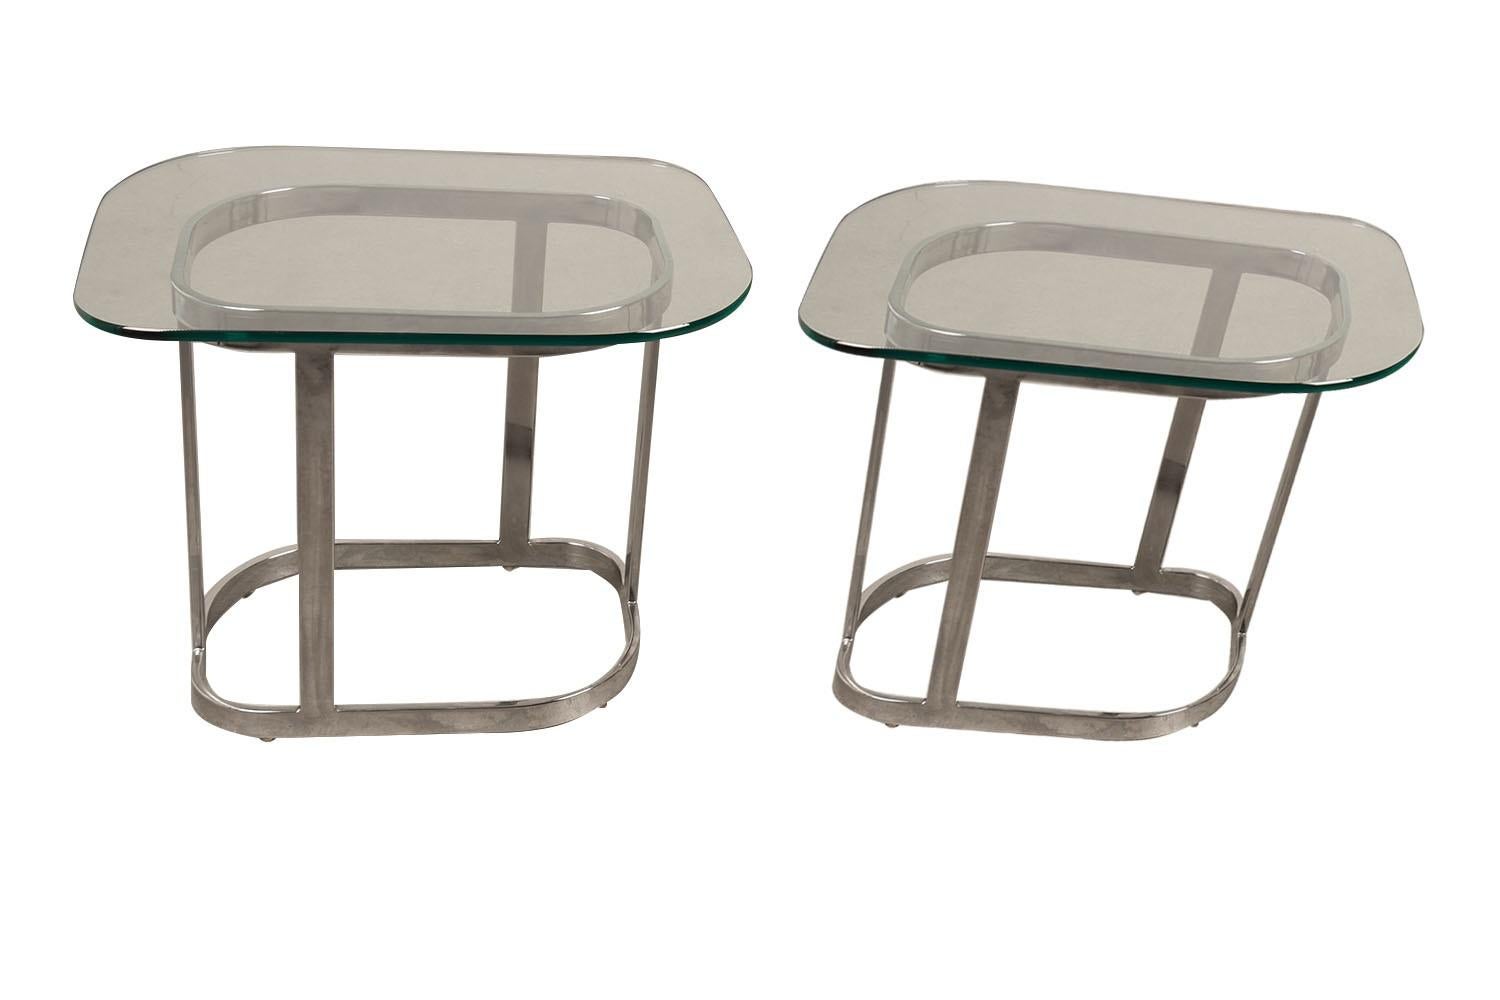 Une extraordinaire paire de tables d'appoint en verre du milieu du siècle au design moderniste élégant et luxuriant. Chacune présente un verre original de 3/8″ d'épaisseur reposant sur une base chromée avec des barres plates chromées de 1/2″